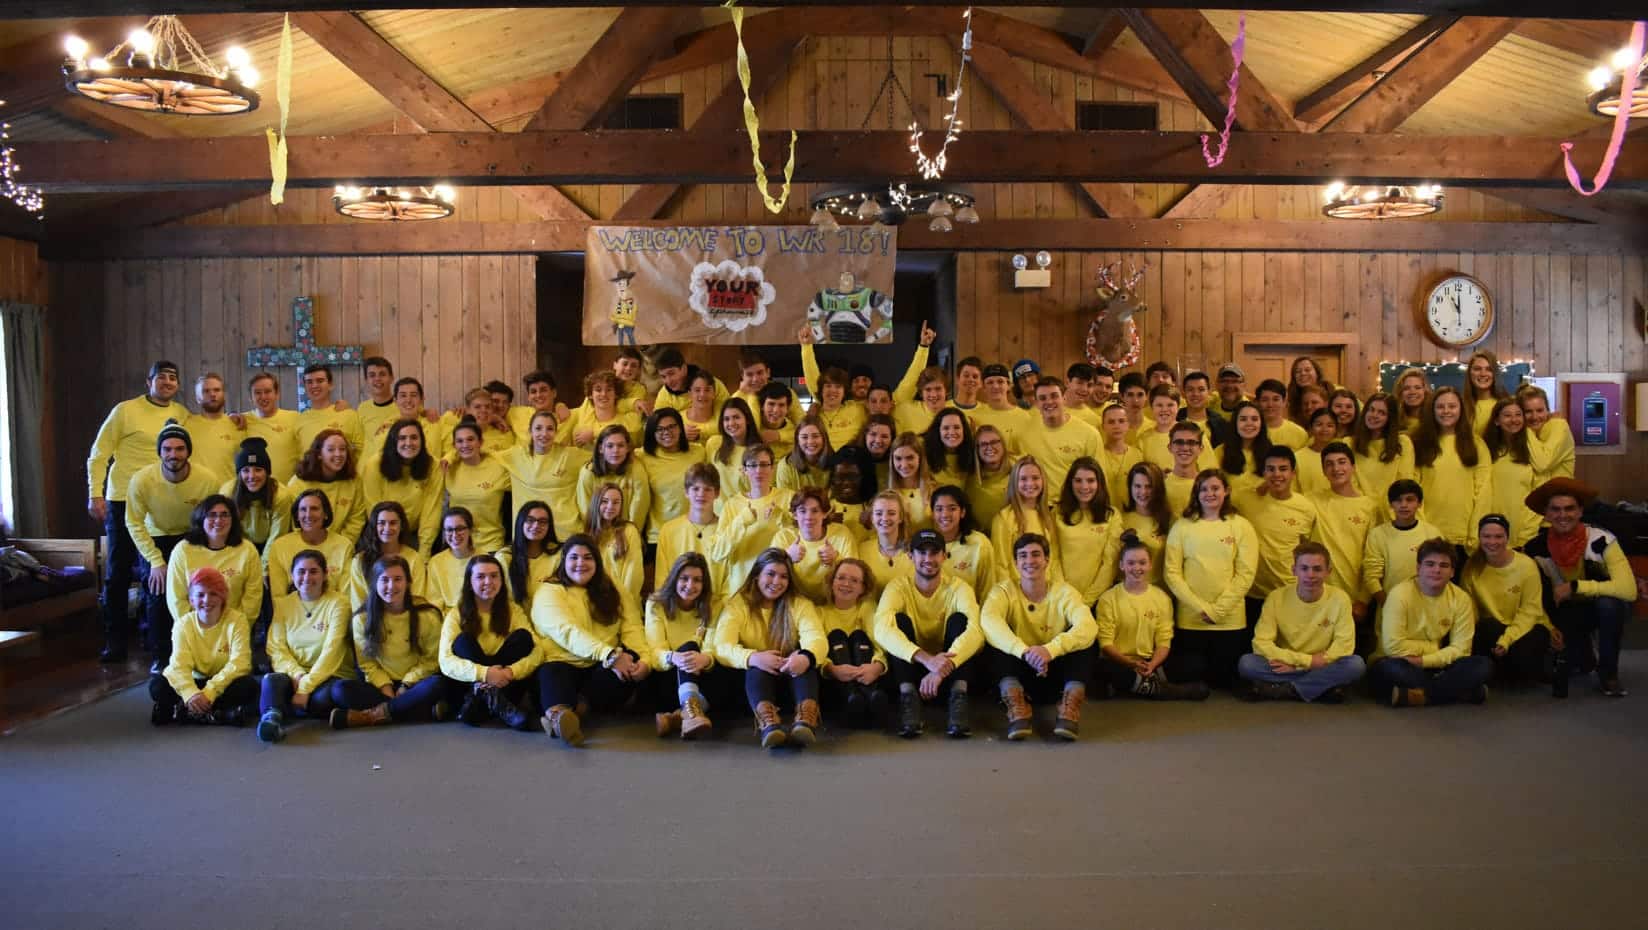 Alumni at the winter reunion wearing matching yellow shirts